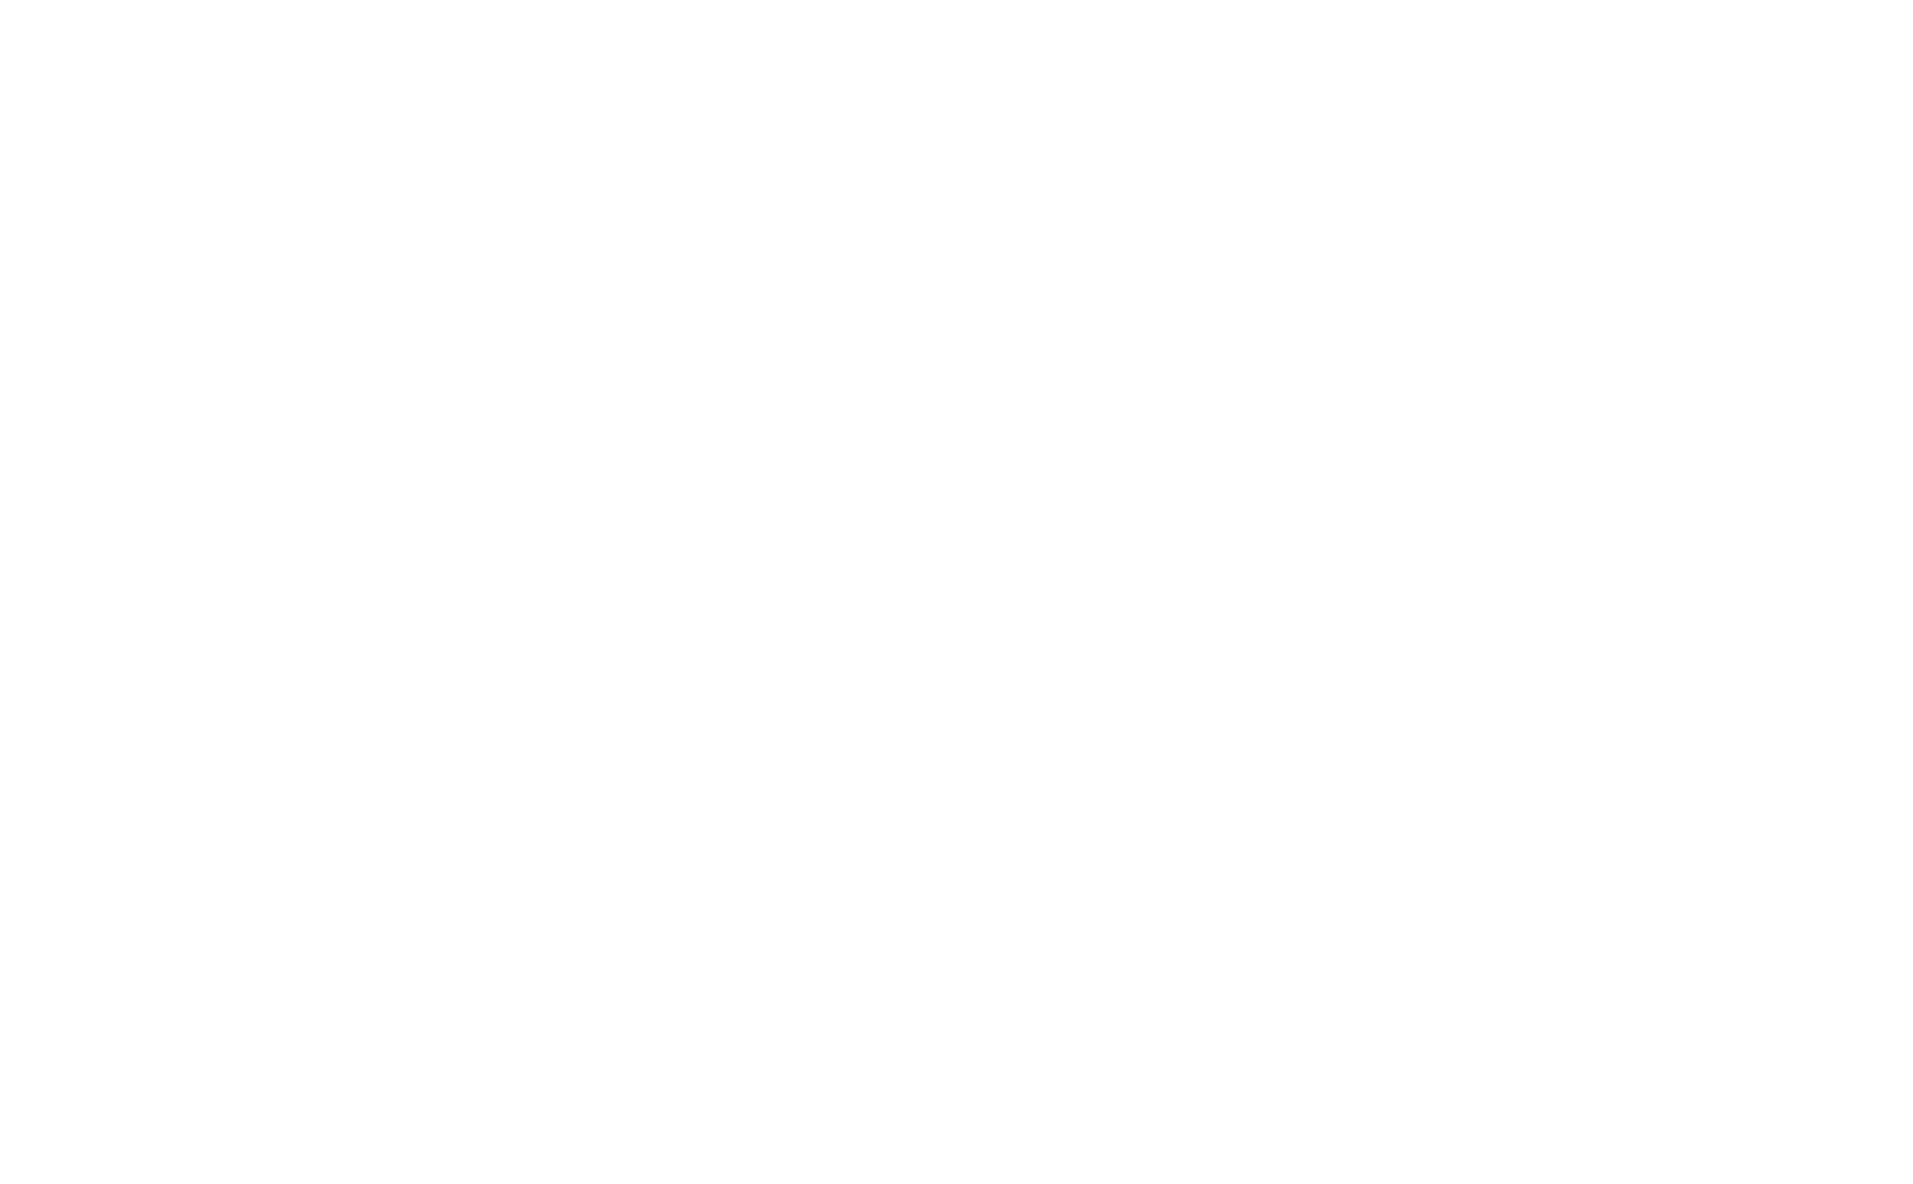 Web Accessibility Award - Gold Award  